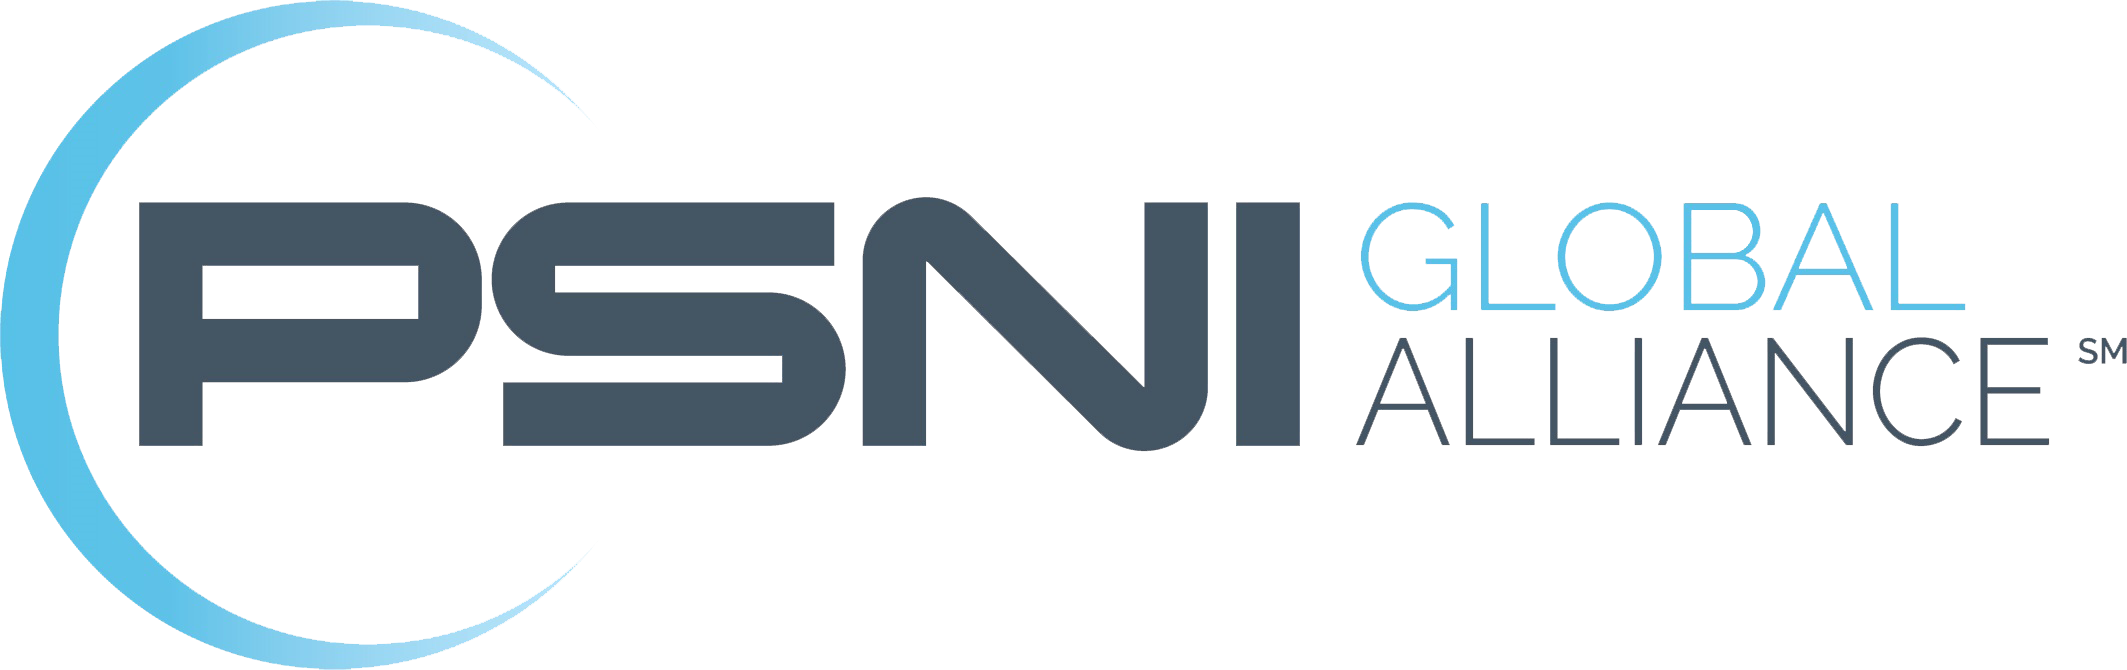 PSNI Global Alliance AV integrator